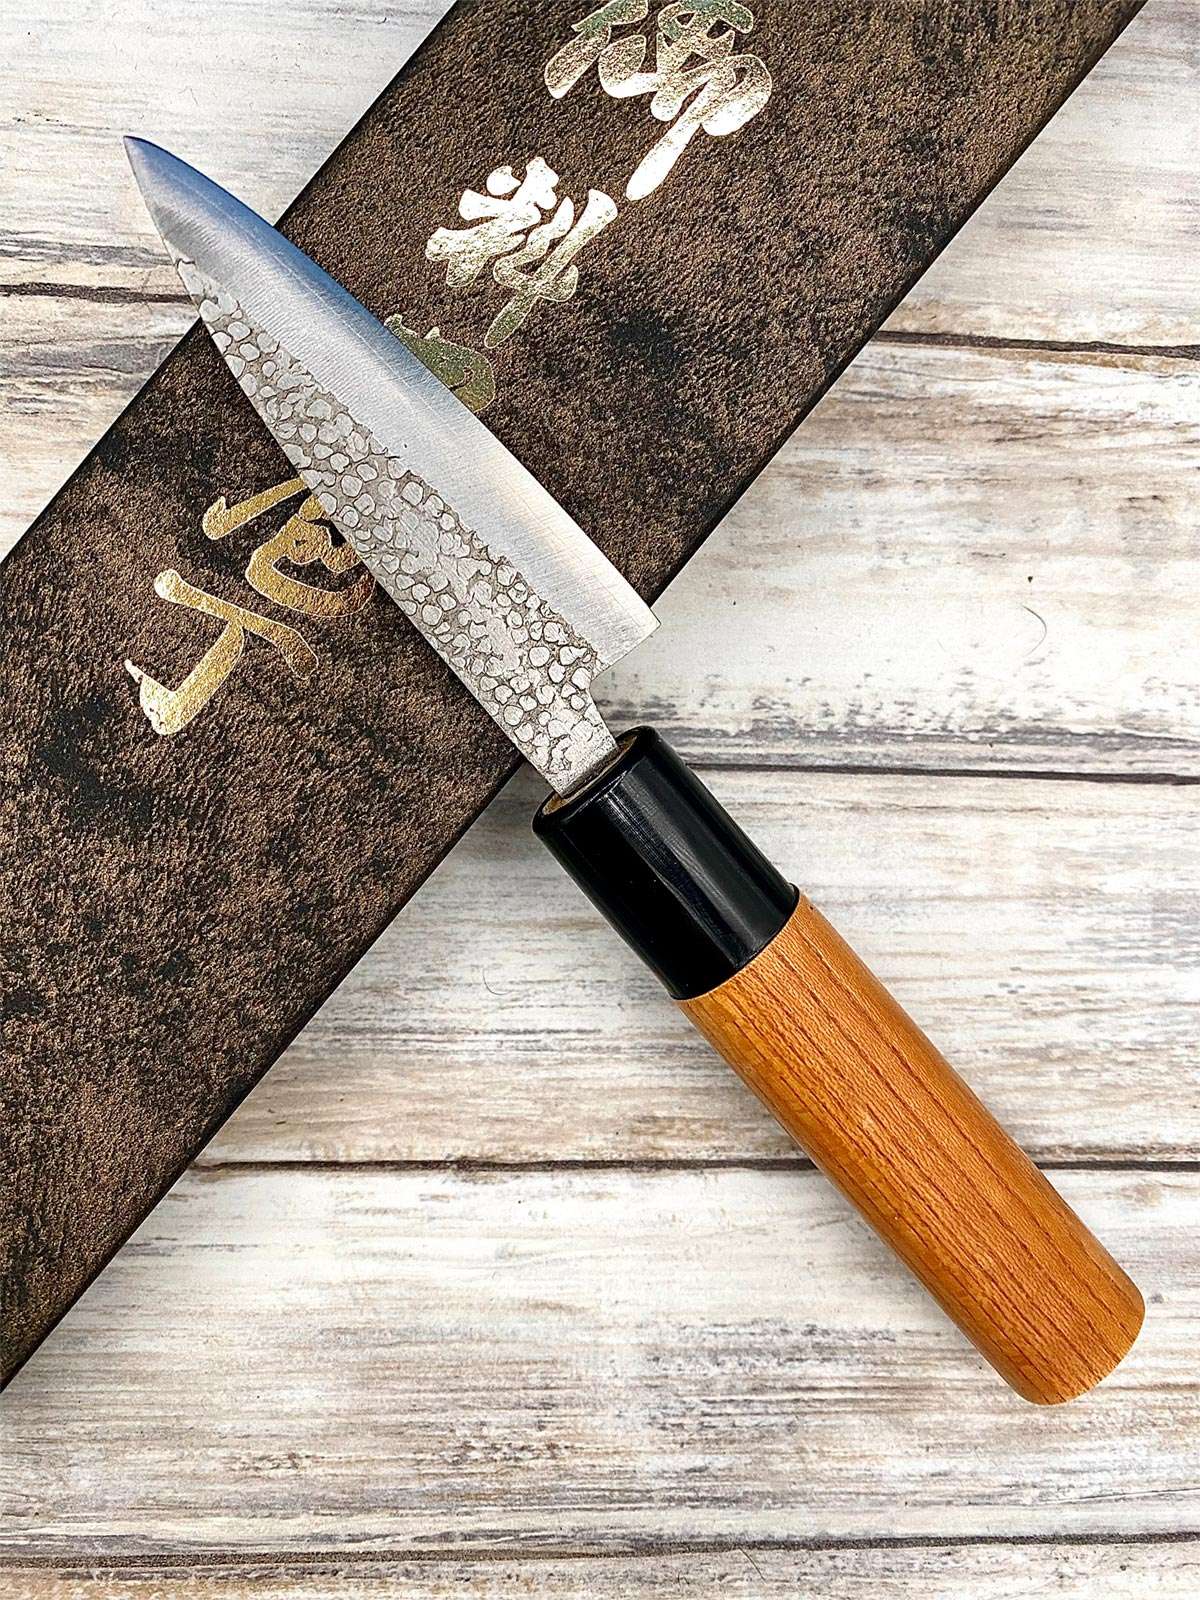 Acheter un Couteau Japonais artisanal Ajikiri pour droitier à Paris meilleur vente de couteaux de cuisine nippon grande marque de qualité